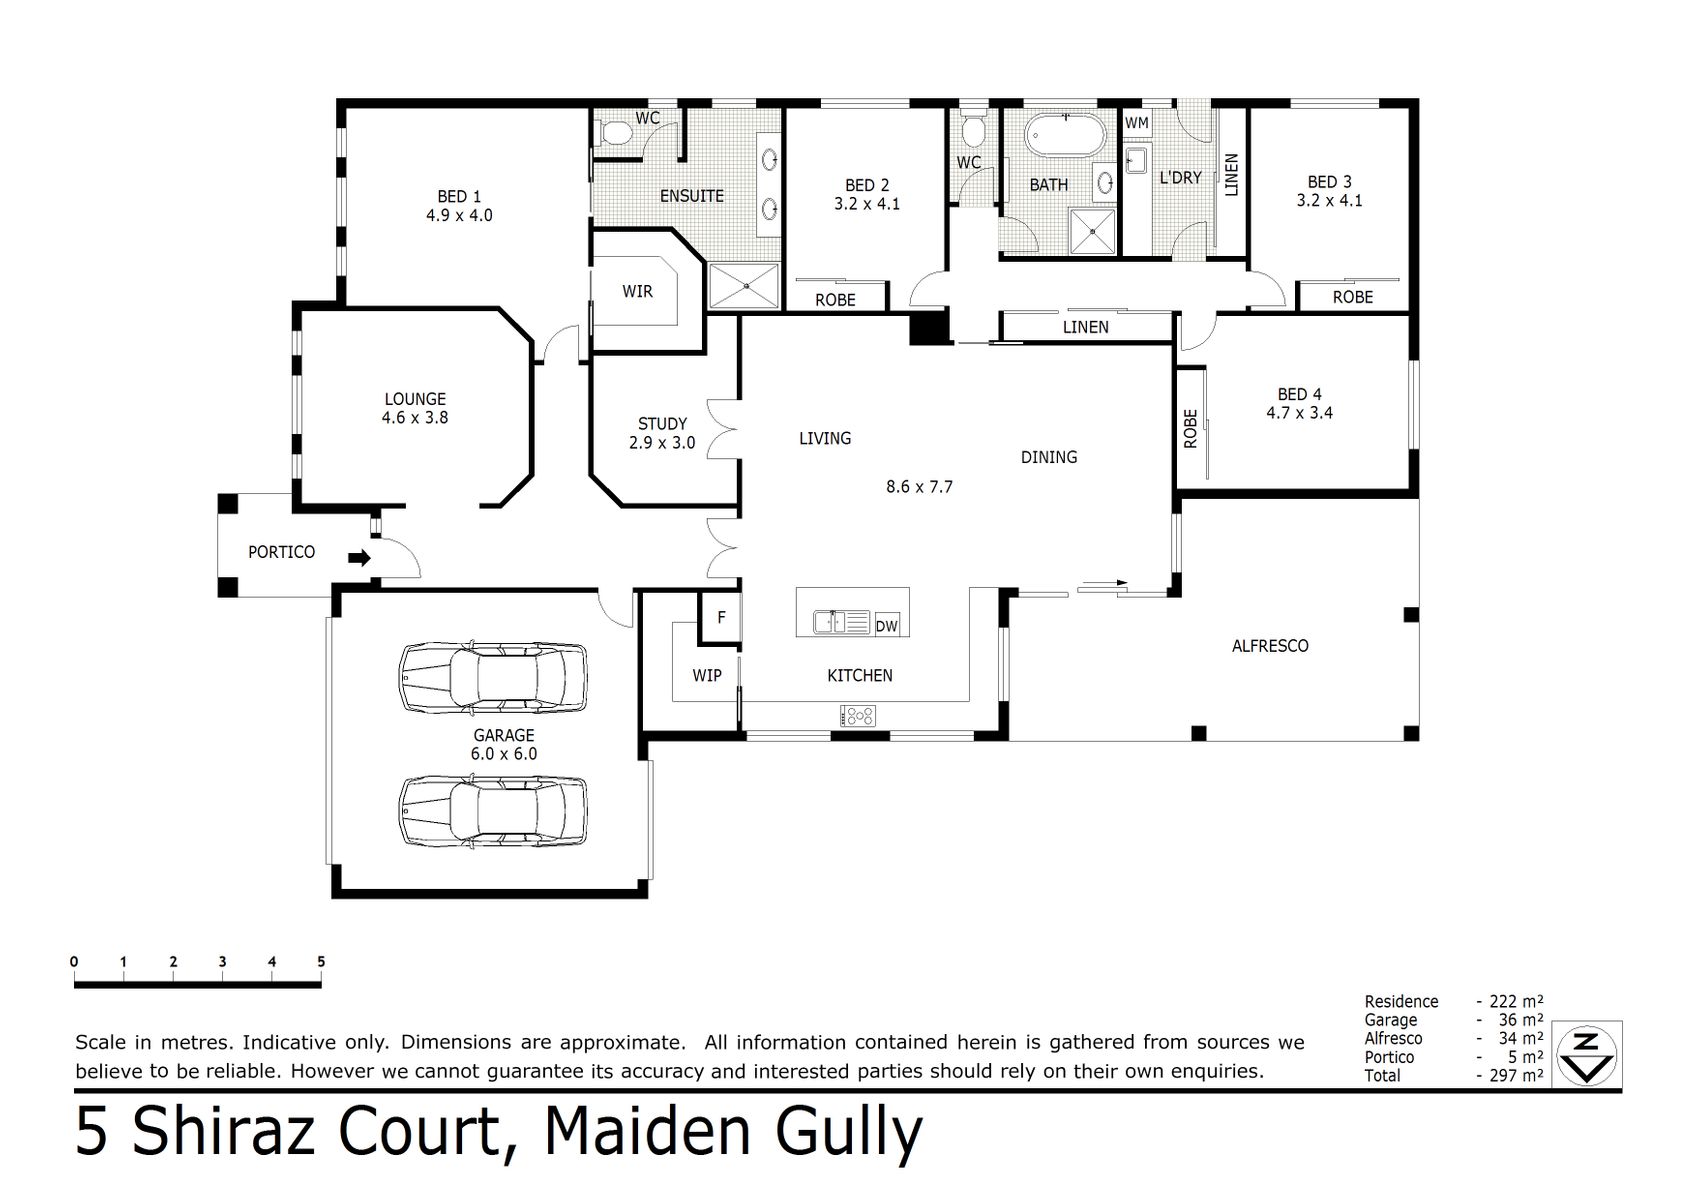 5 Shiraz Court Maiden Gully (16 MAR 2021) 258sqm